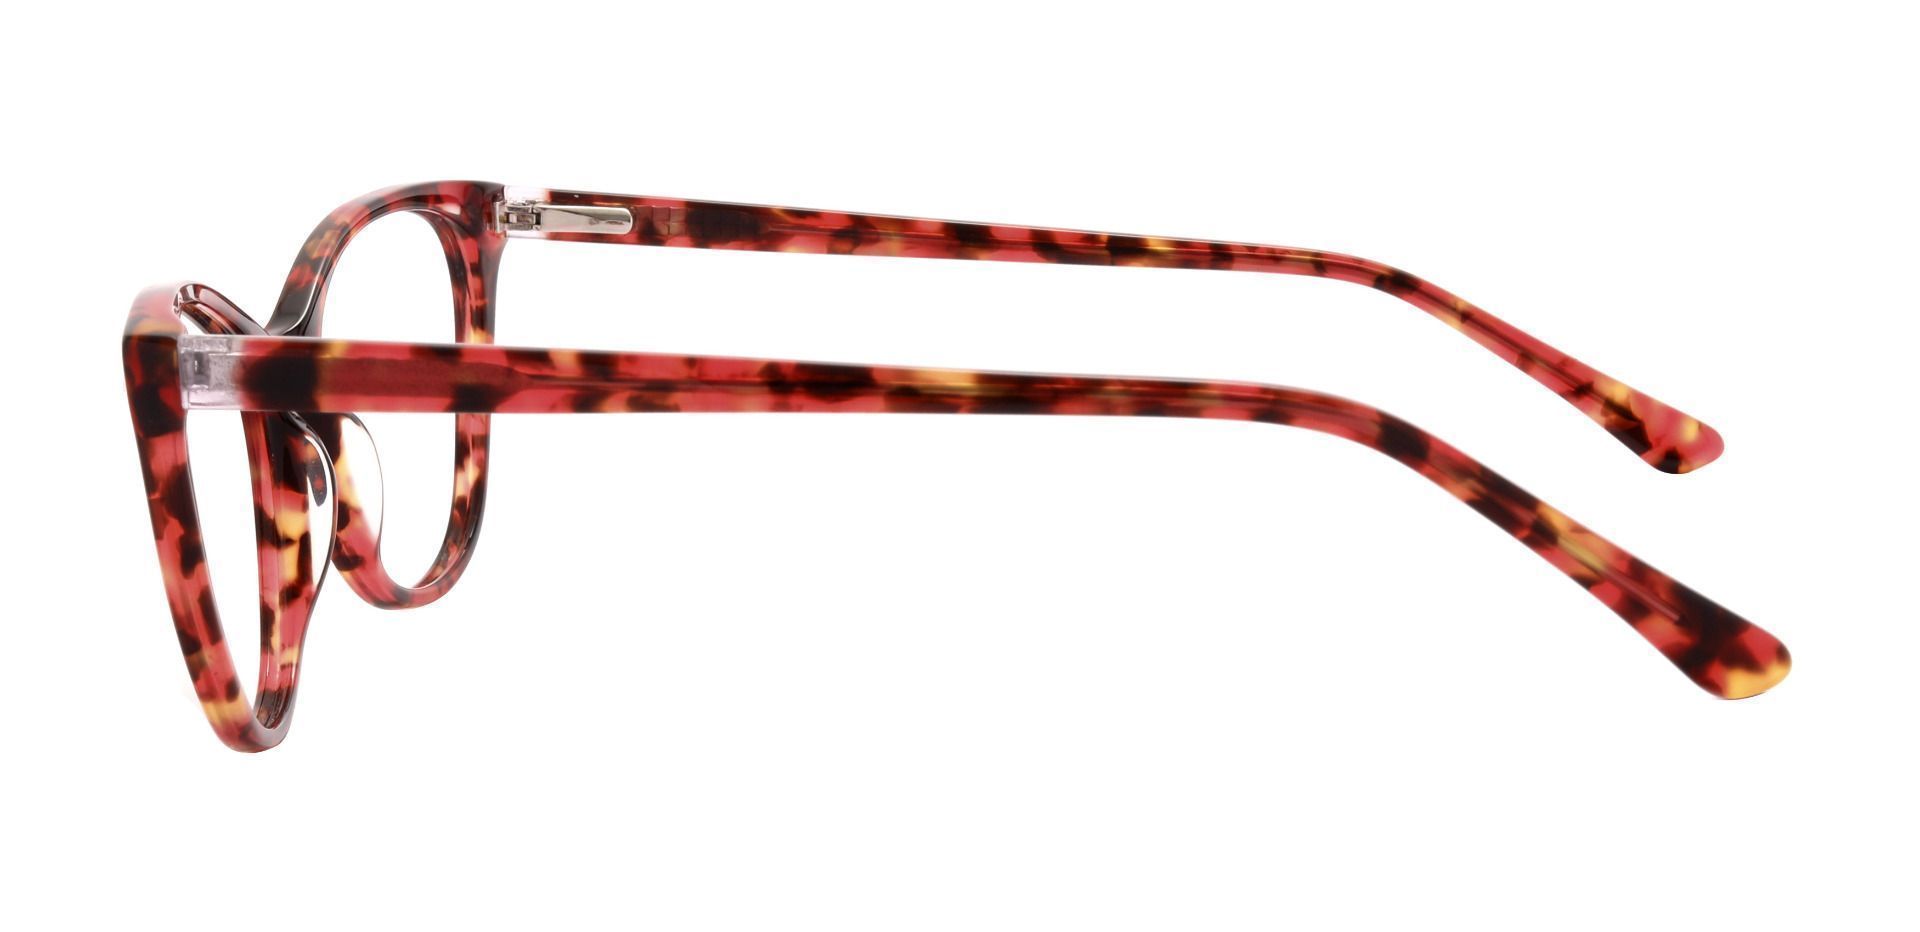 Huffman Cat Eye Prescription Glasses - Tortoise